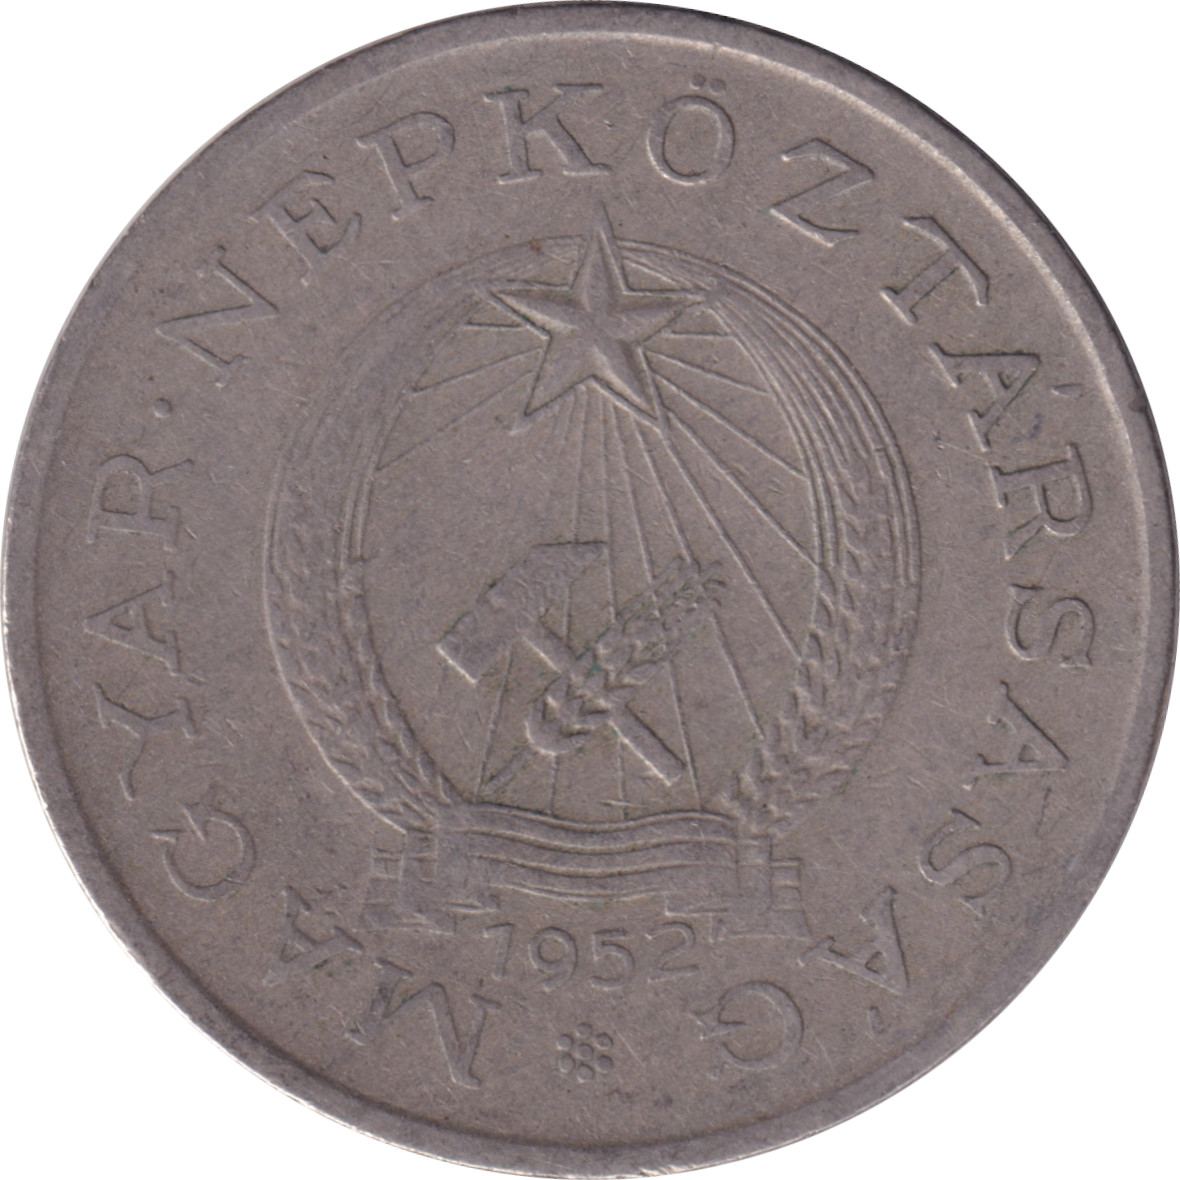 2 forint - Emblème socialiste